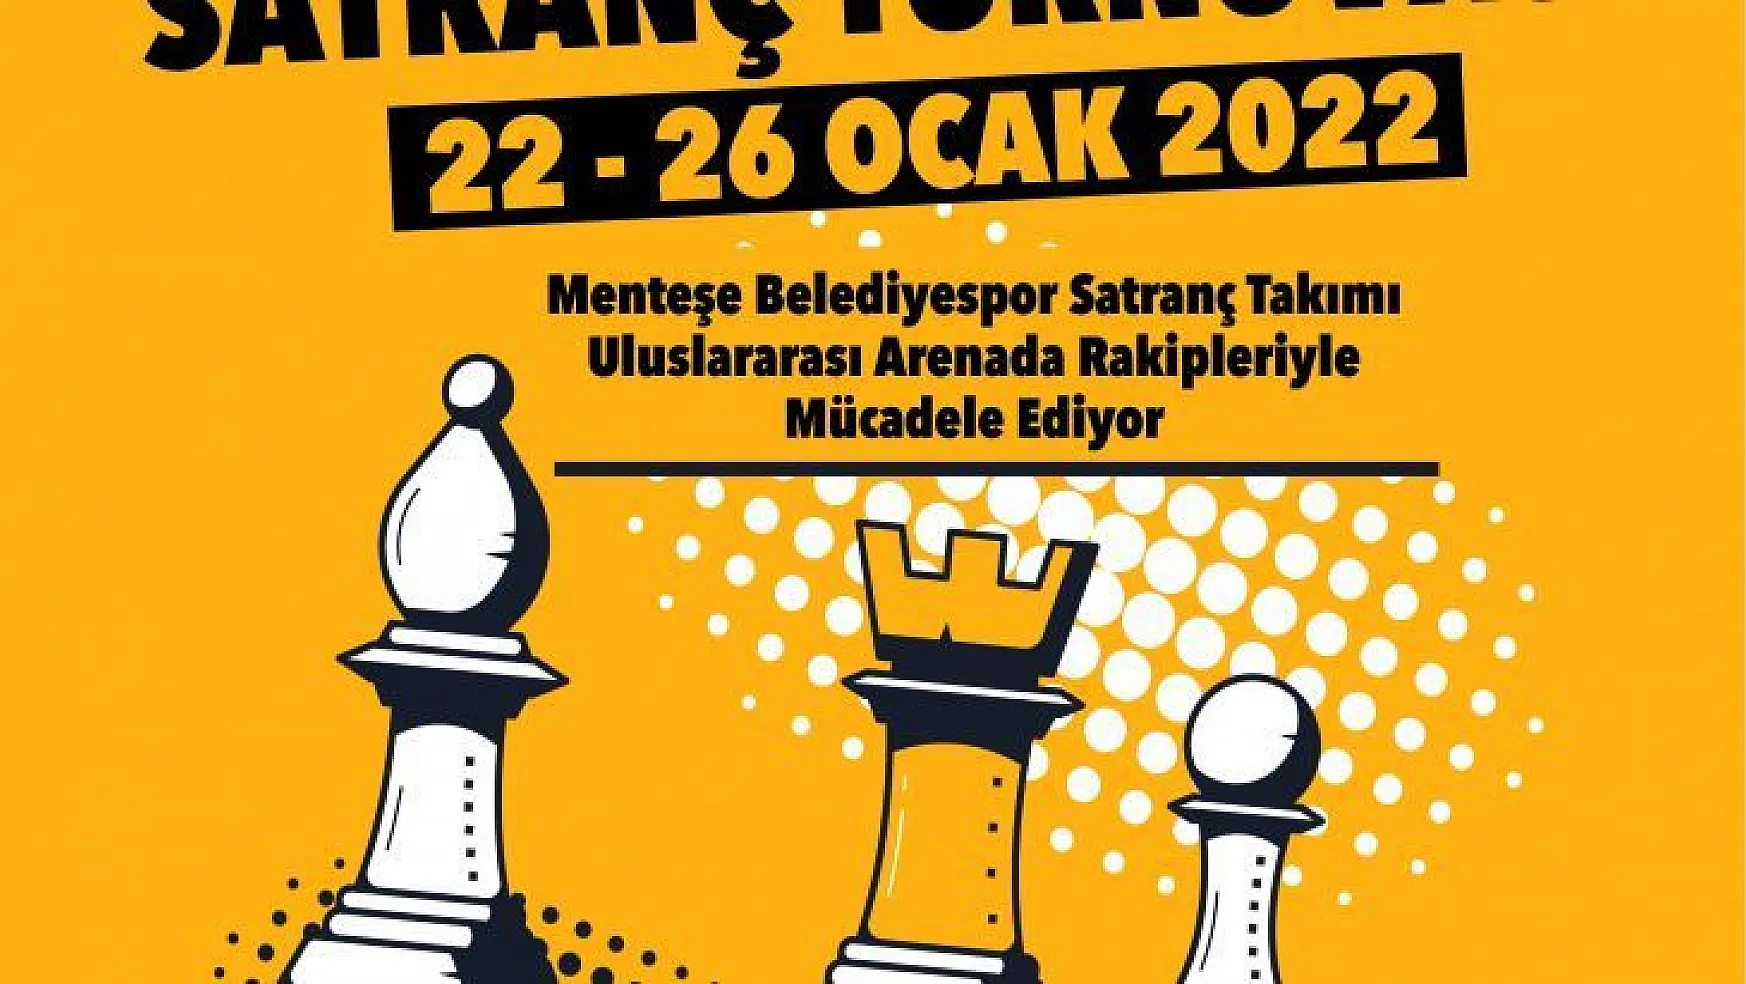 2. Uluslararası Satranç Turnuvası Başlıyor